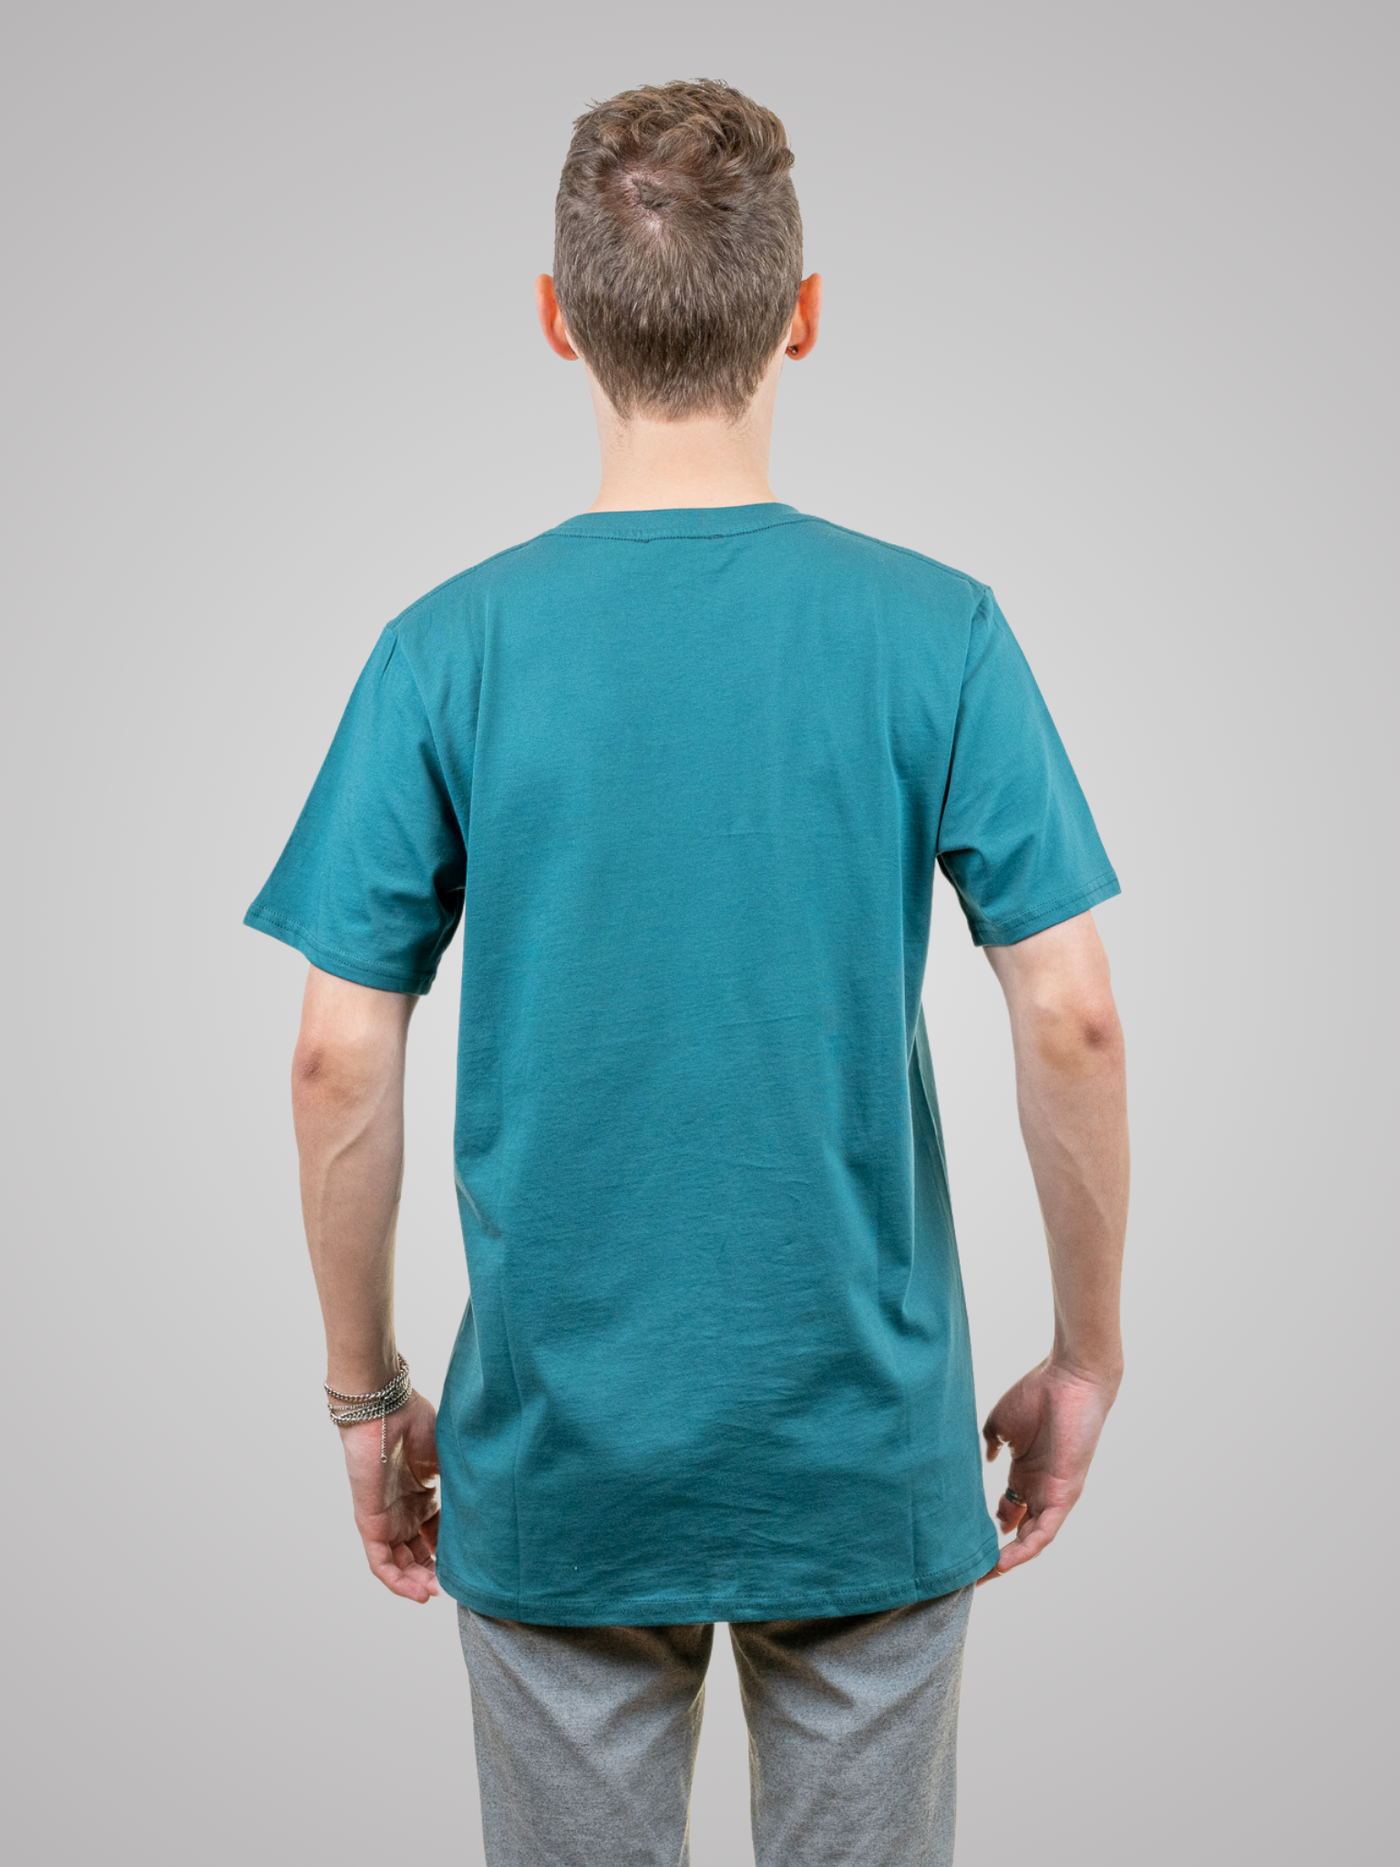 Mann mit nachhaltigen grünen Tshirt mit Bergmotiv  drinnen von hinten